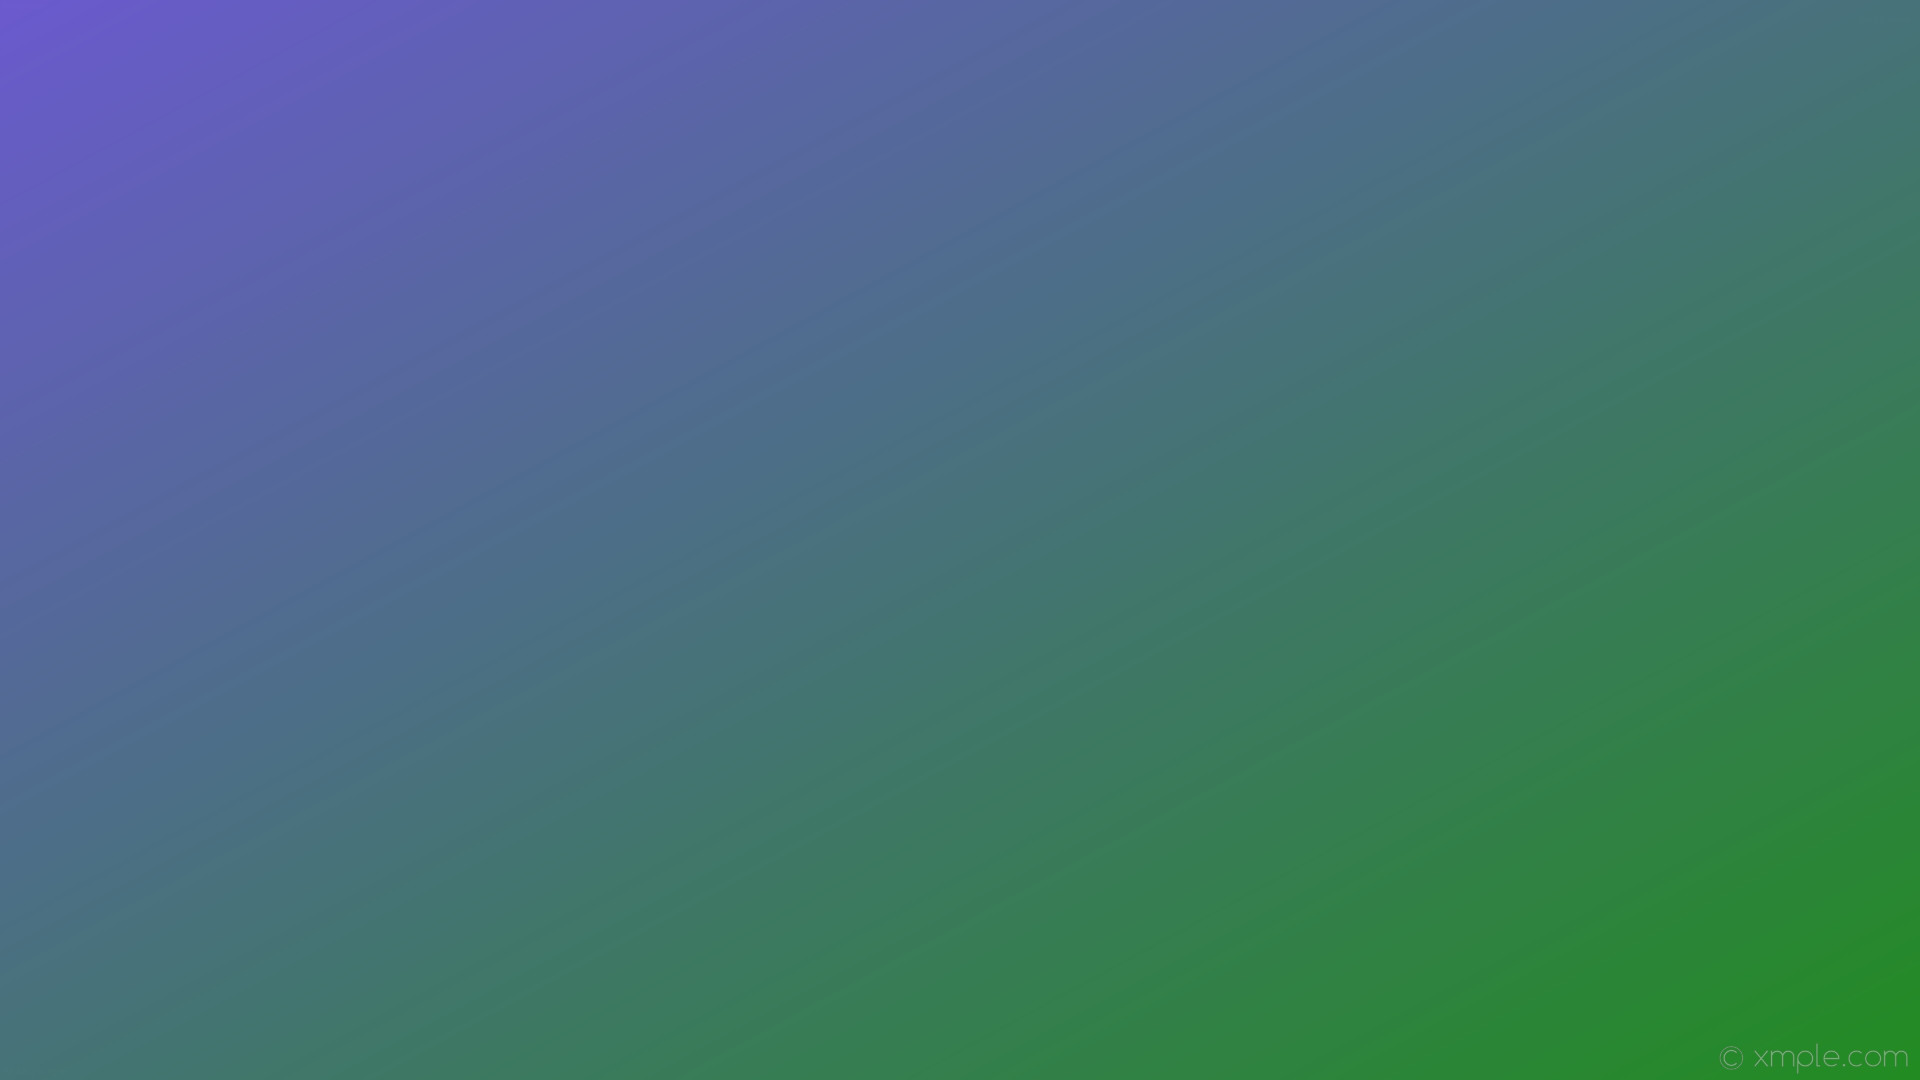 1920x1080 wallpaper purple green gradient linear slate blue forest green #6a5acd  #228b22 150Â°